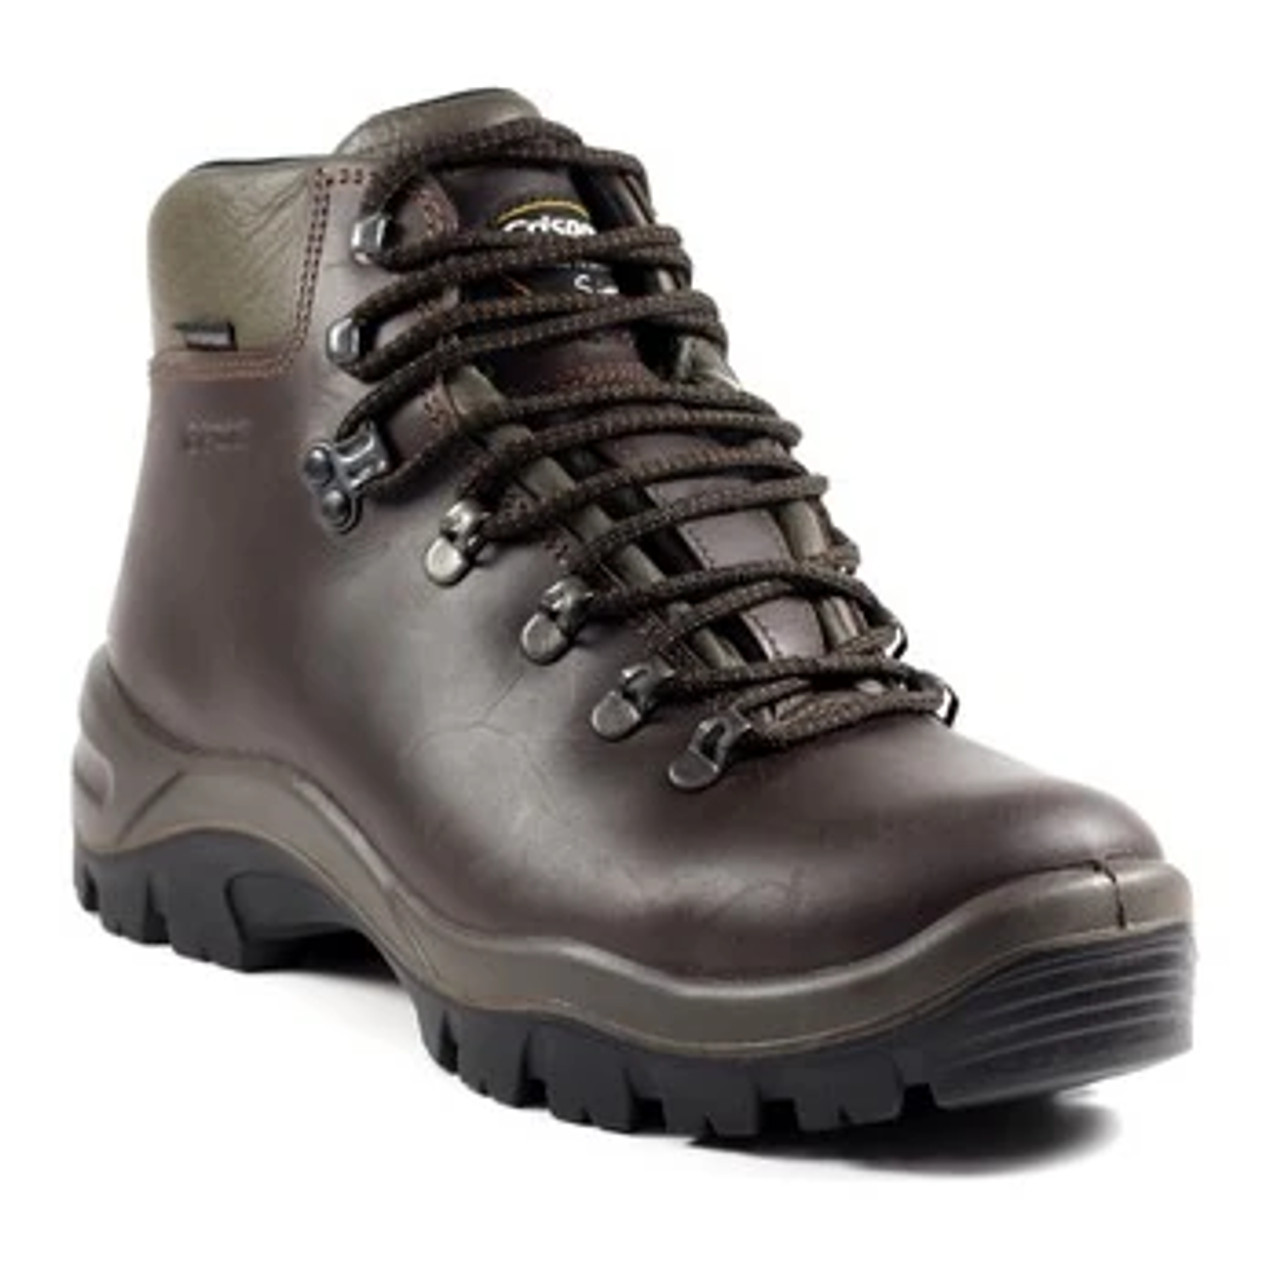 Grisport Peaklander brown hiking, work boot